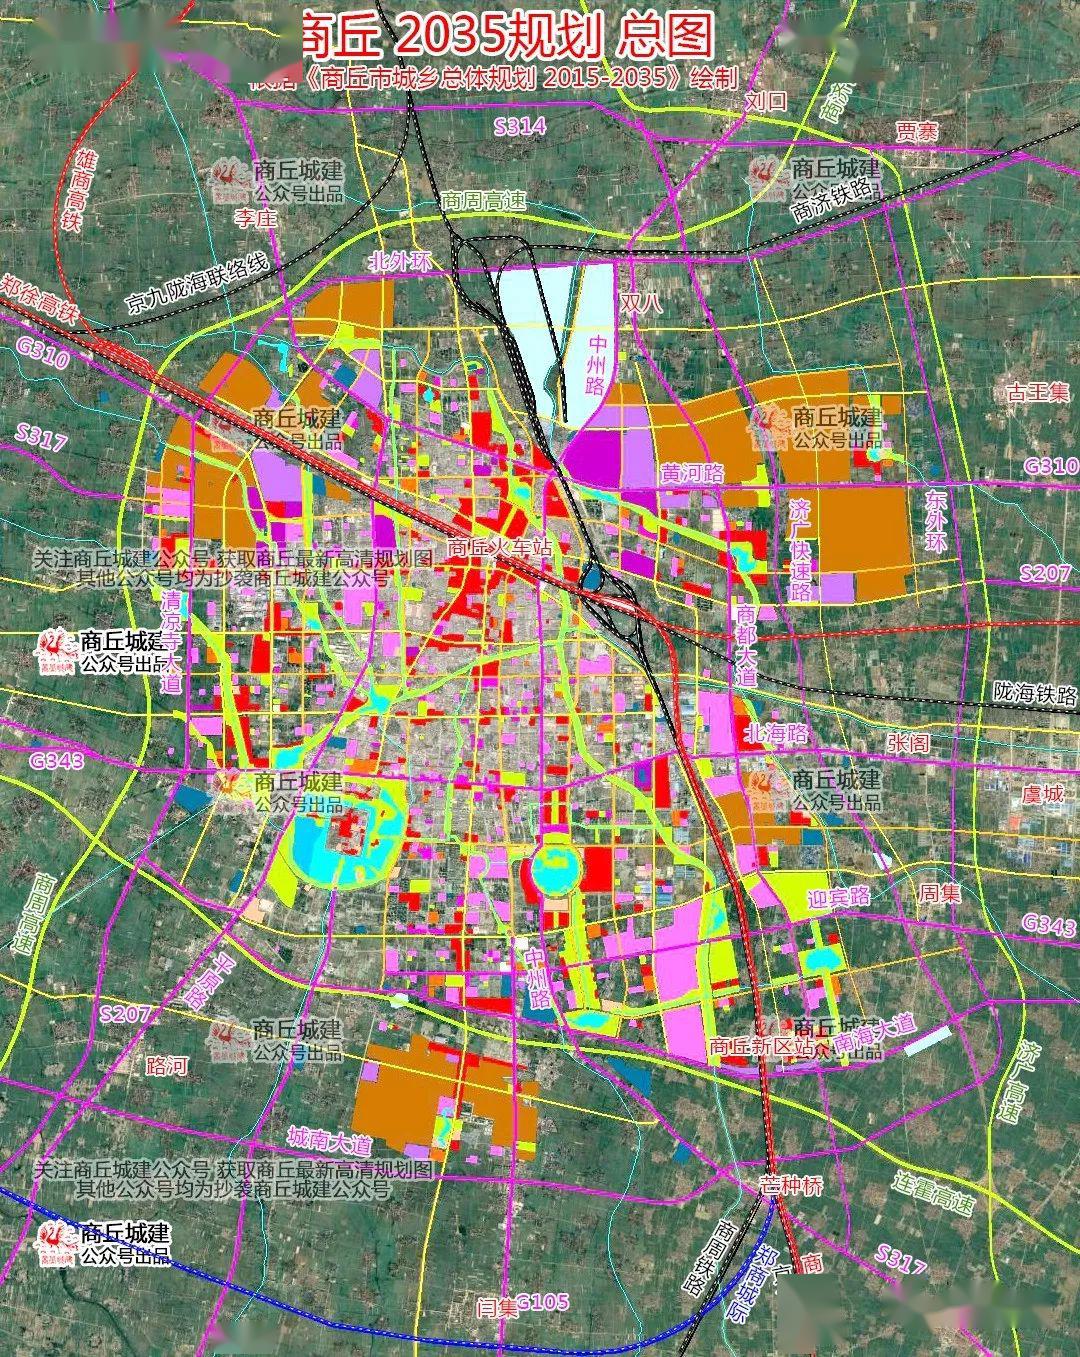 现在一块看看,商丘市城乡总体规划 2015-2035(卫星地图版)图吧! 总图图片